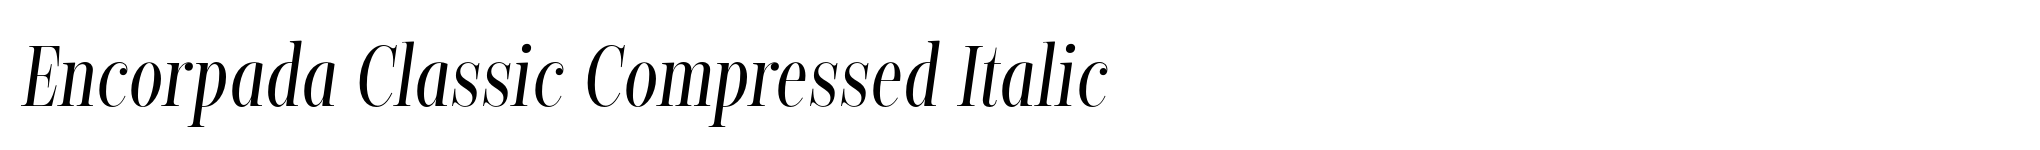 Encorpada Classic Compressed Italic image